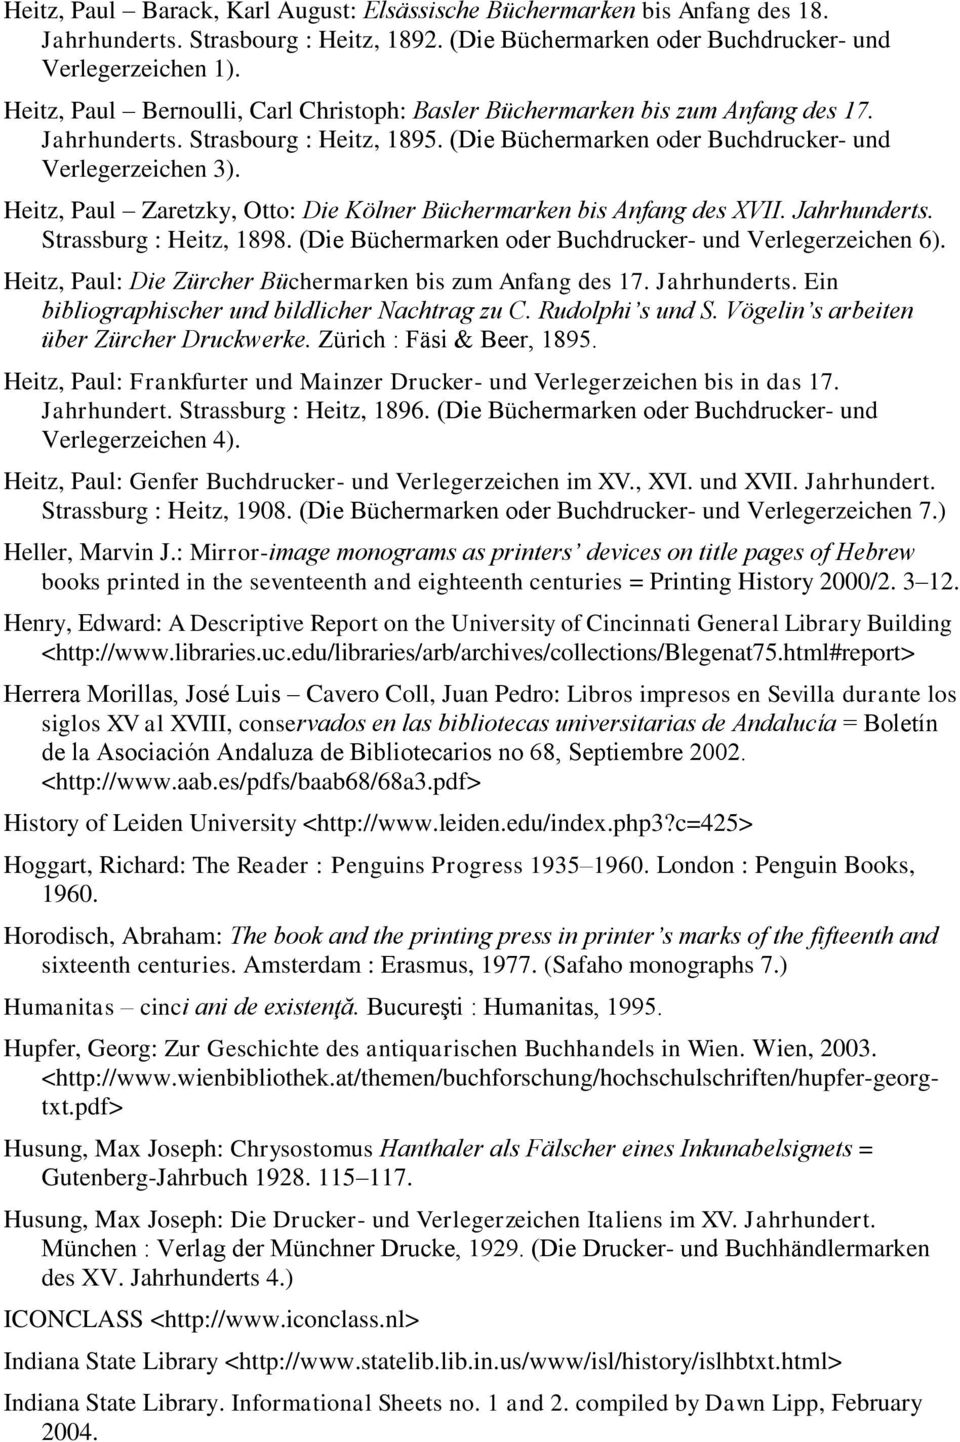 Heitz, Paul Zaretzky, Otto: Die Kölner Büchermarken bis Anfang des XVII. Jahrhunderts. Strassburg : Heitz, 1898. (Die Büchermarken oder Buchdrucker- und Verlegerzeichen 6).